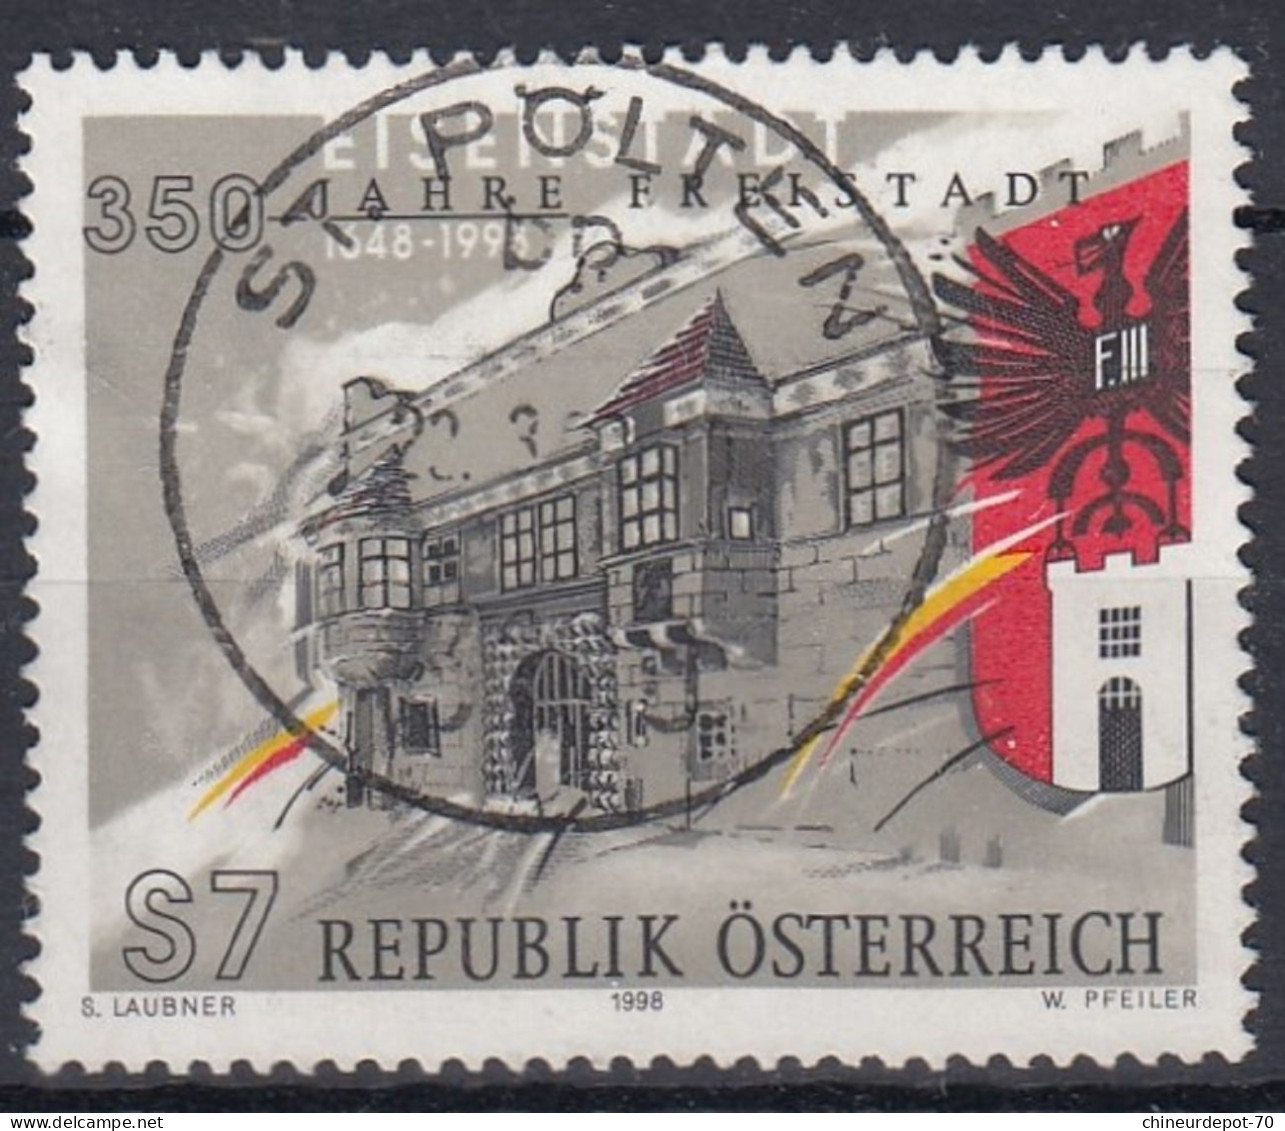 S7 REPUBLIK ÖSTERREICH S LAUBNER 1998 W PFEILER Cachet Sankt Polten - Gebraucht